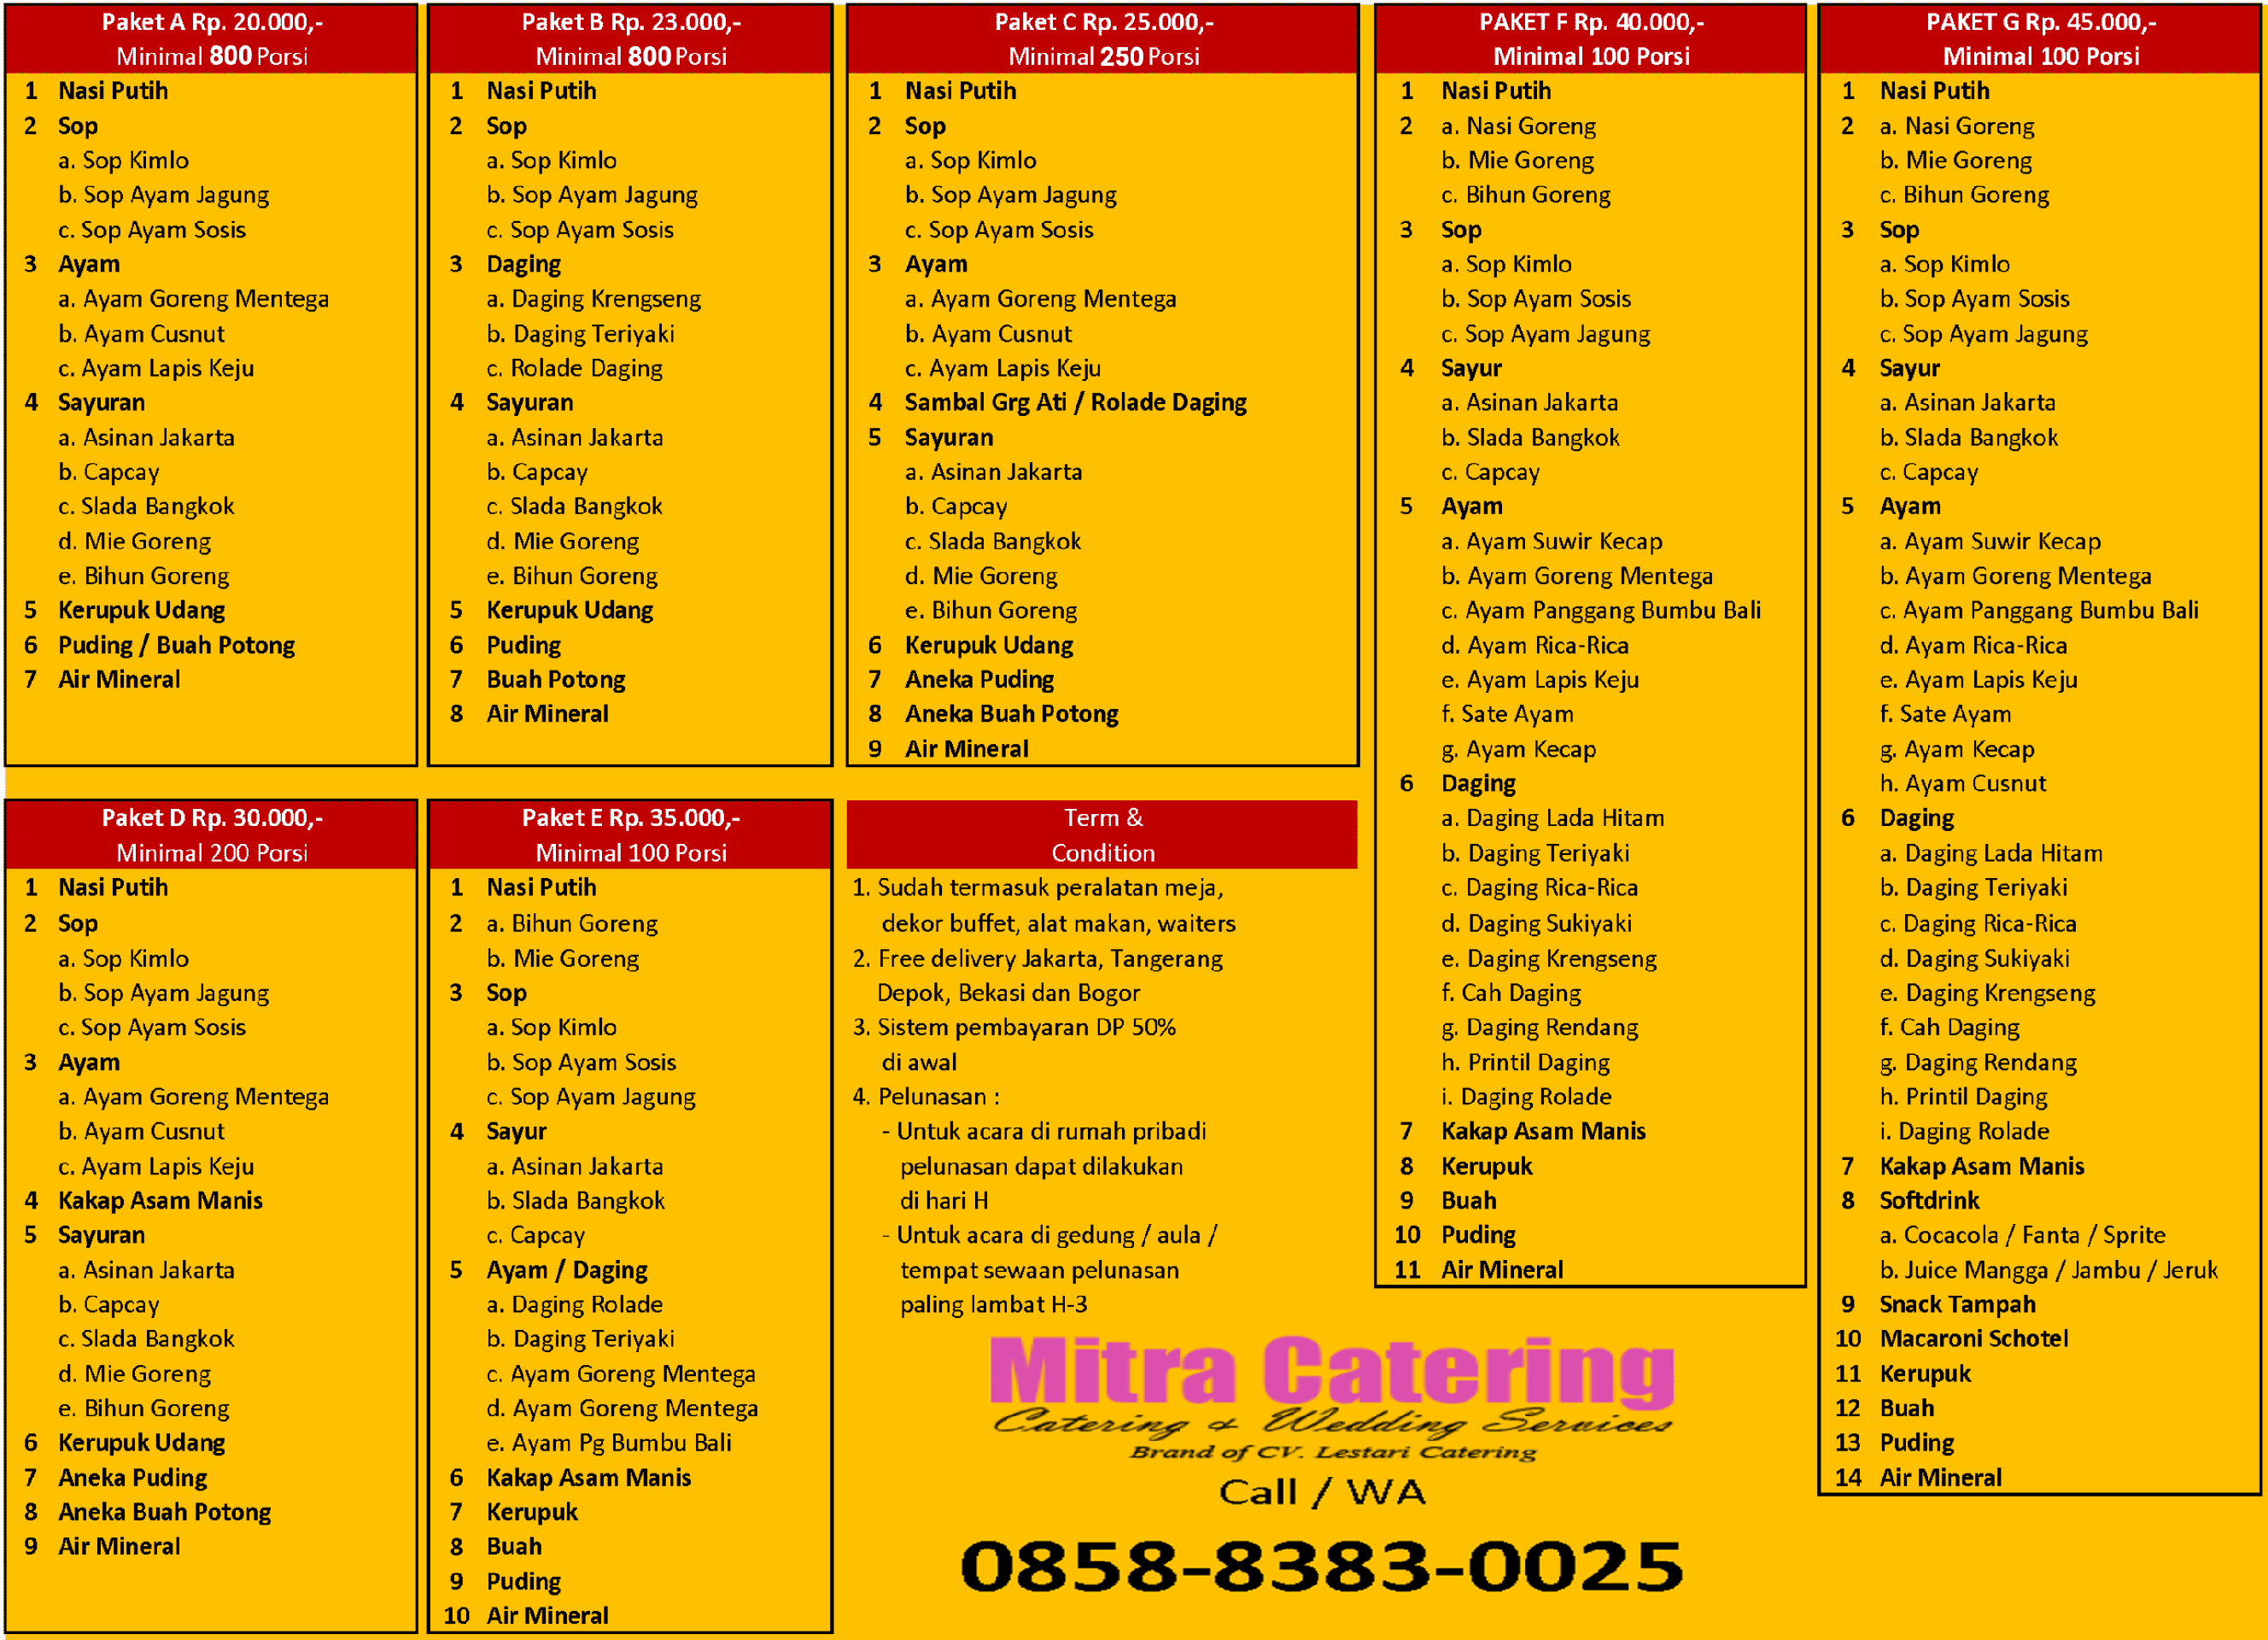 daftar harga menu catering jakarta murah meriah